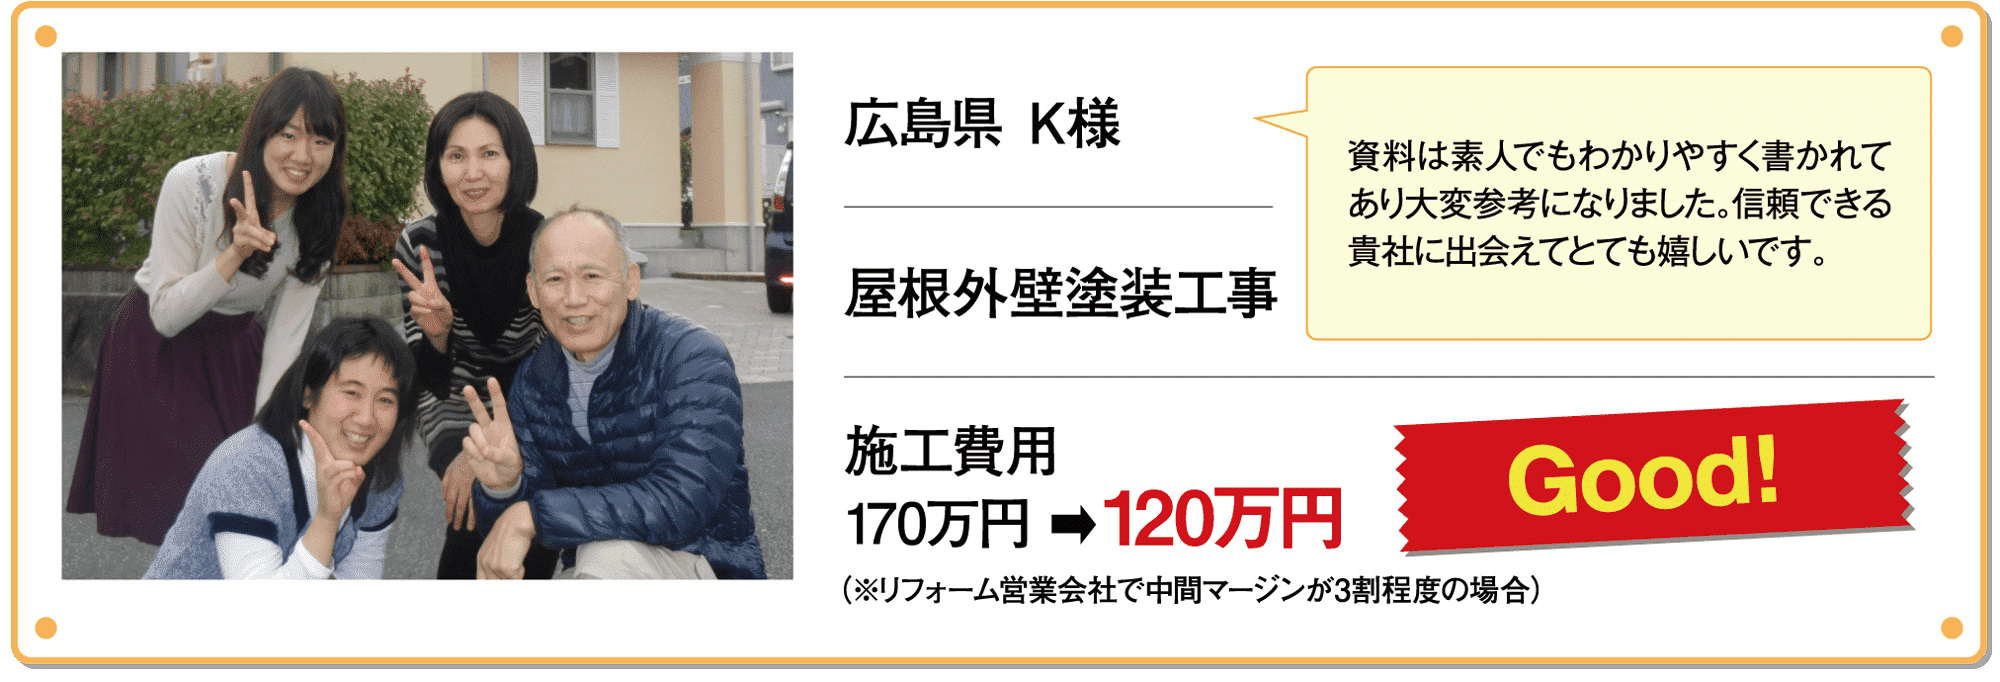 広島県　K様　屋根外壁塗装工事　施工費用170万円→120万円